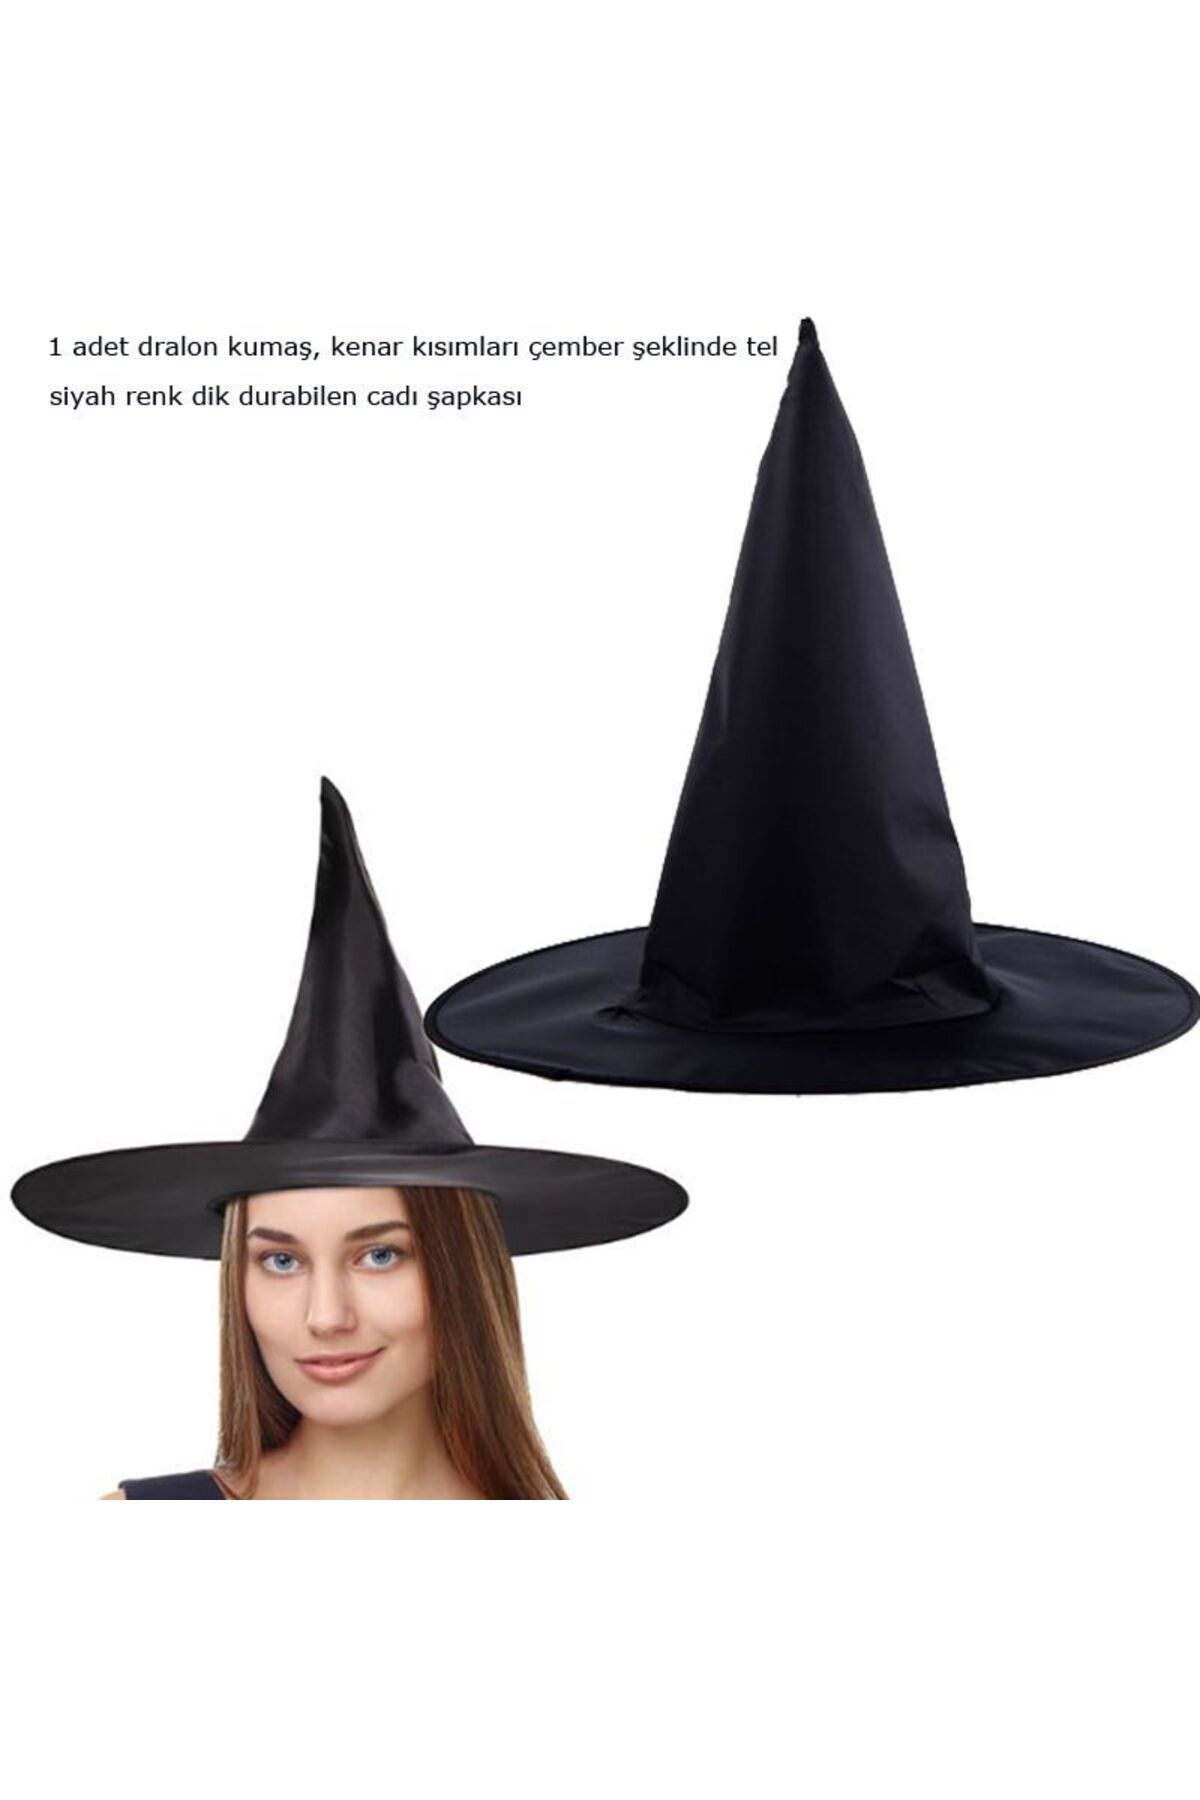 partidolu Halloween Siyah Renk Dralon Kumaş Cadı Şapkası Yetişkin 1 Adet